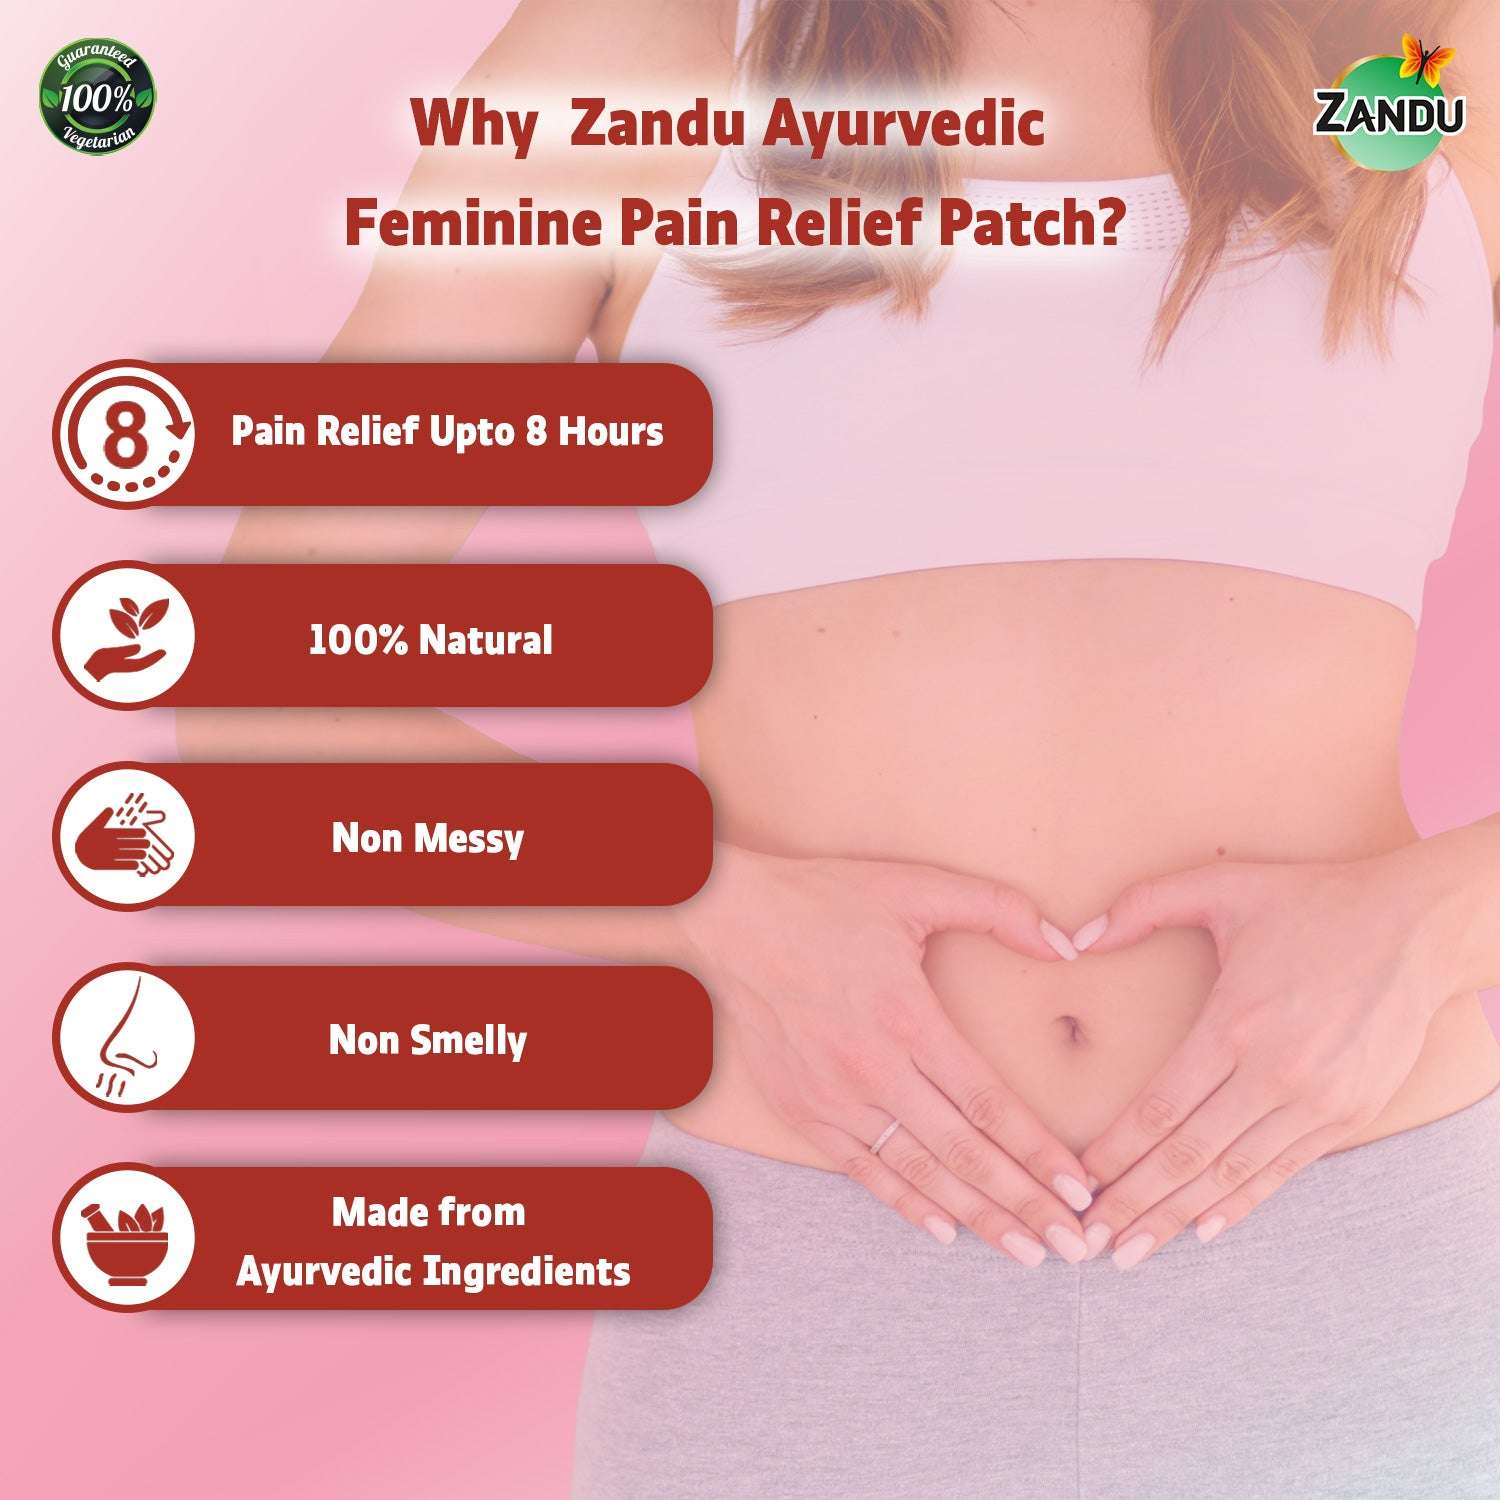 Why choose Zandu Periods Pain Relief Patch